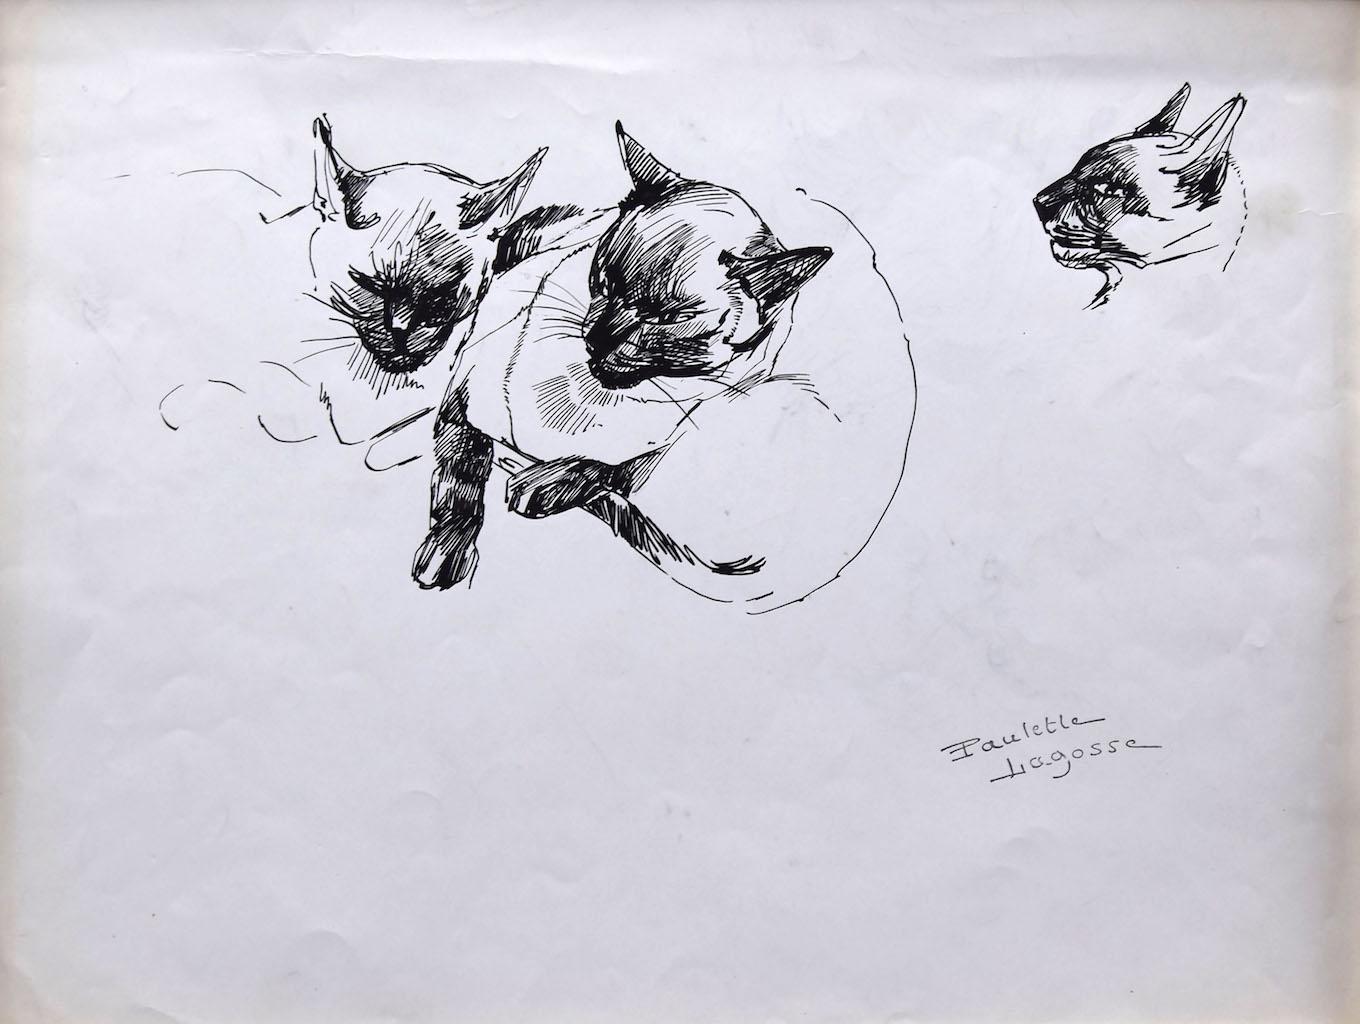 Les chats - Stylo sur papier de Marie Paulette Lagosse - 1970